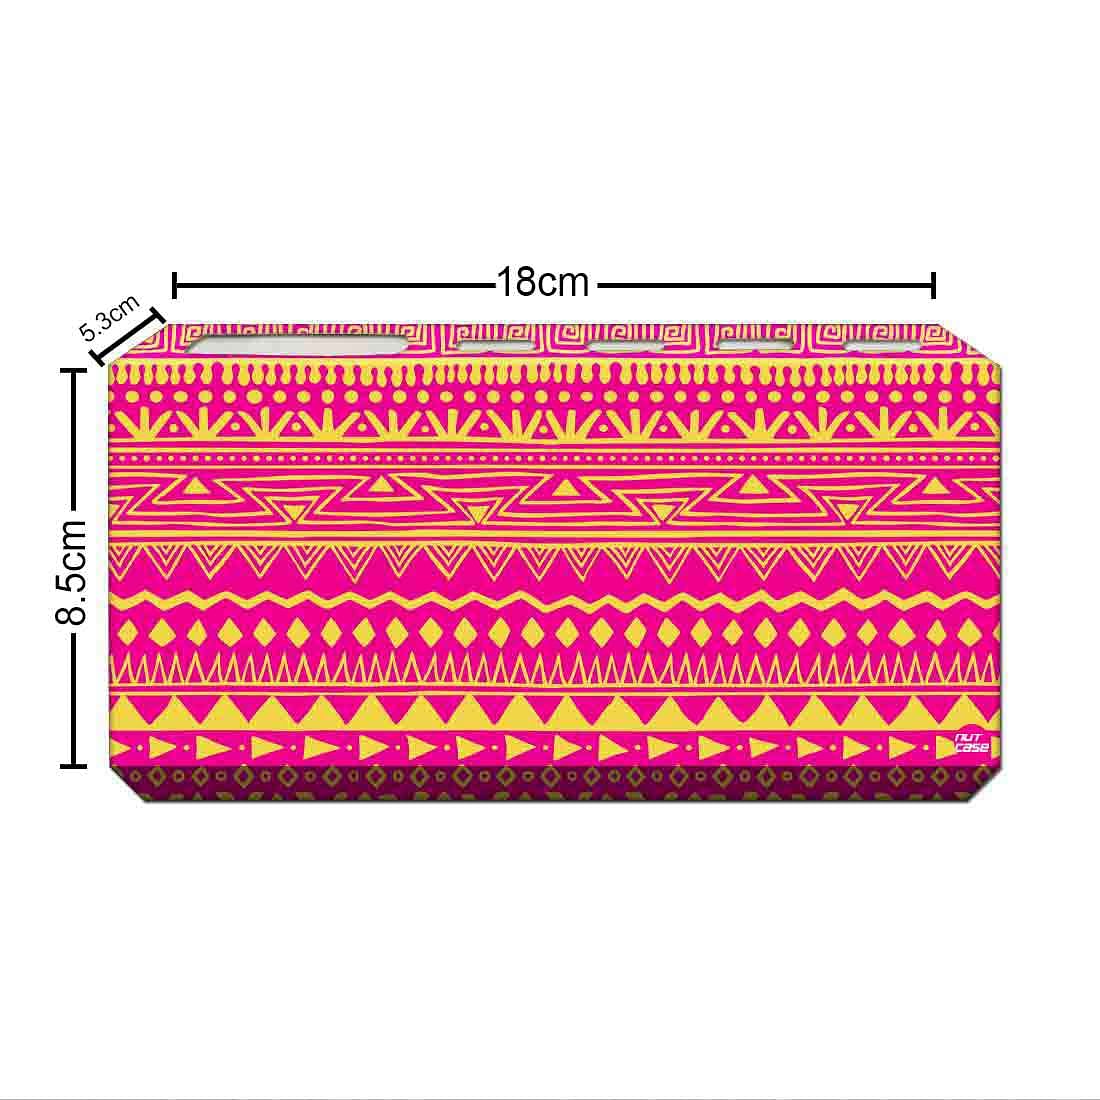 Printed Designer Toothbrush Holder for Bathroom- Aztec Pattern Pink Nutcase